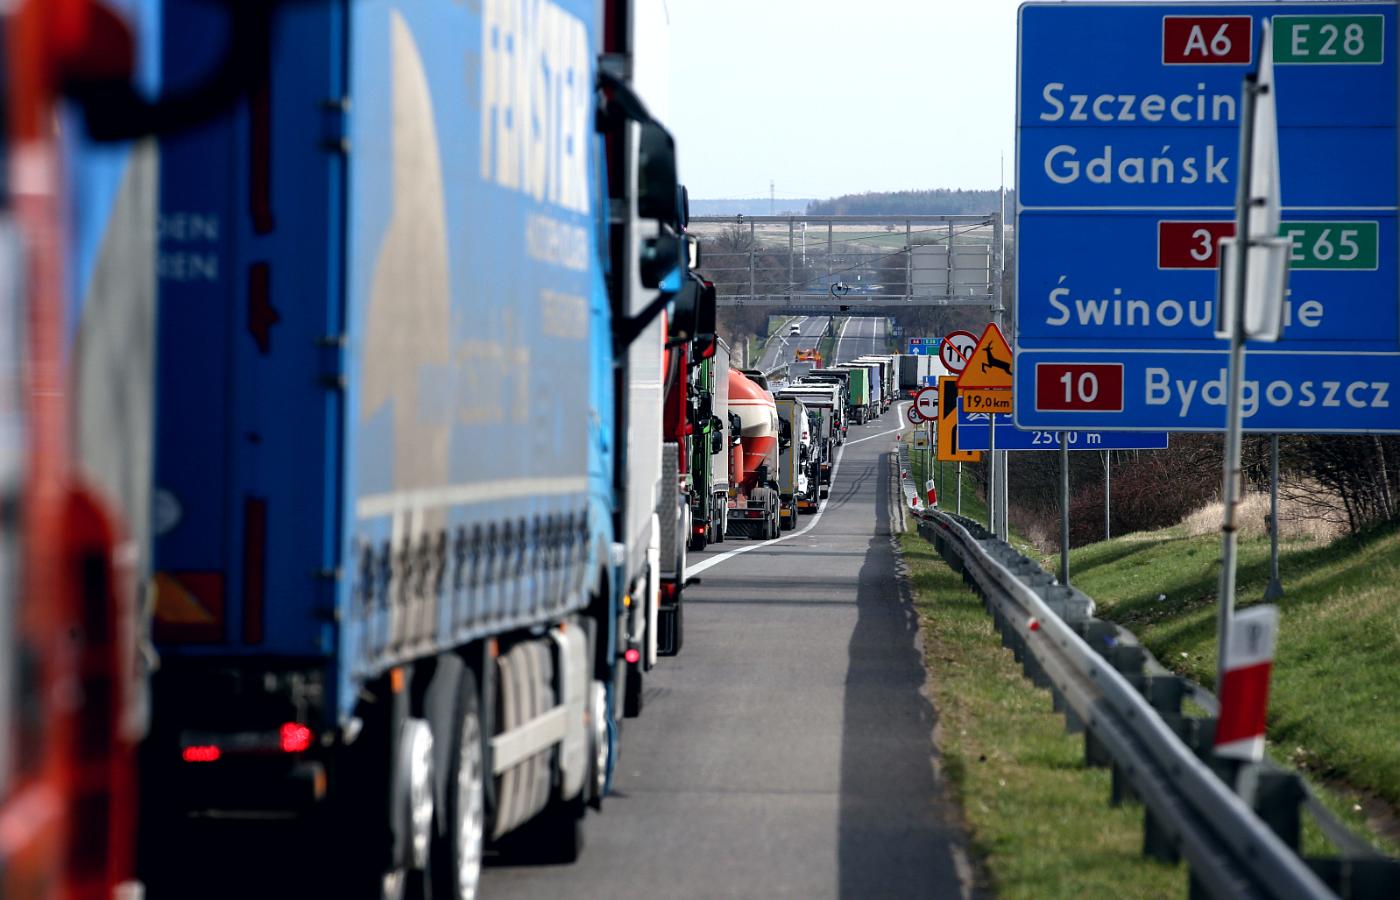 Dzisiejsza sytuacja na polsko-niemieckiej granicy przypomina tę sprzed dwóch miesięcy, kiedy to czas oczekiwania na wjazd do Polski wynosił nawet kilkadziesiąt godzin.